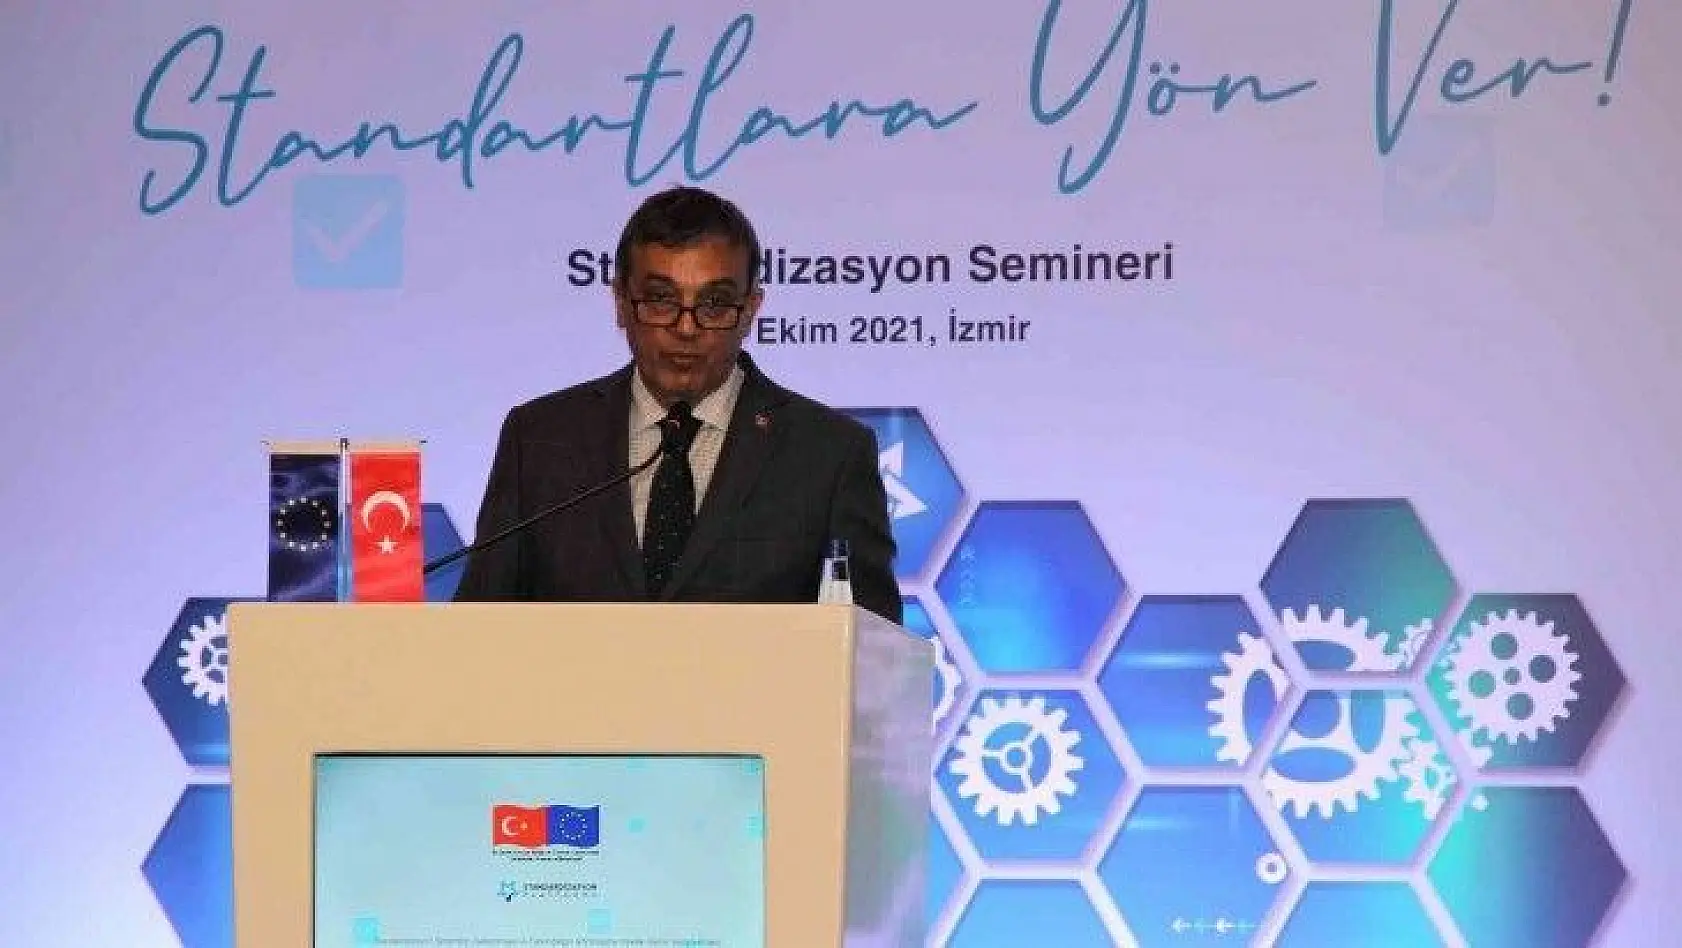 TSE, İzmir'de 'Standartlara Yön Ver' semineri gerçekleştirdi